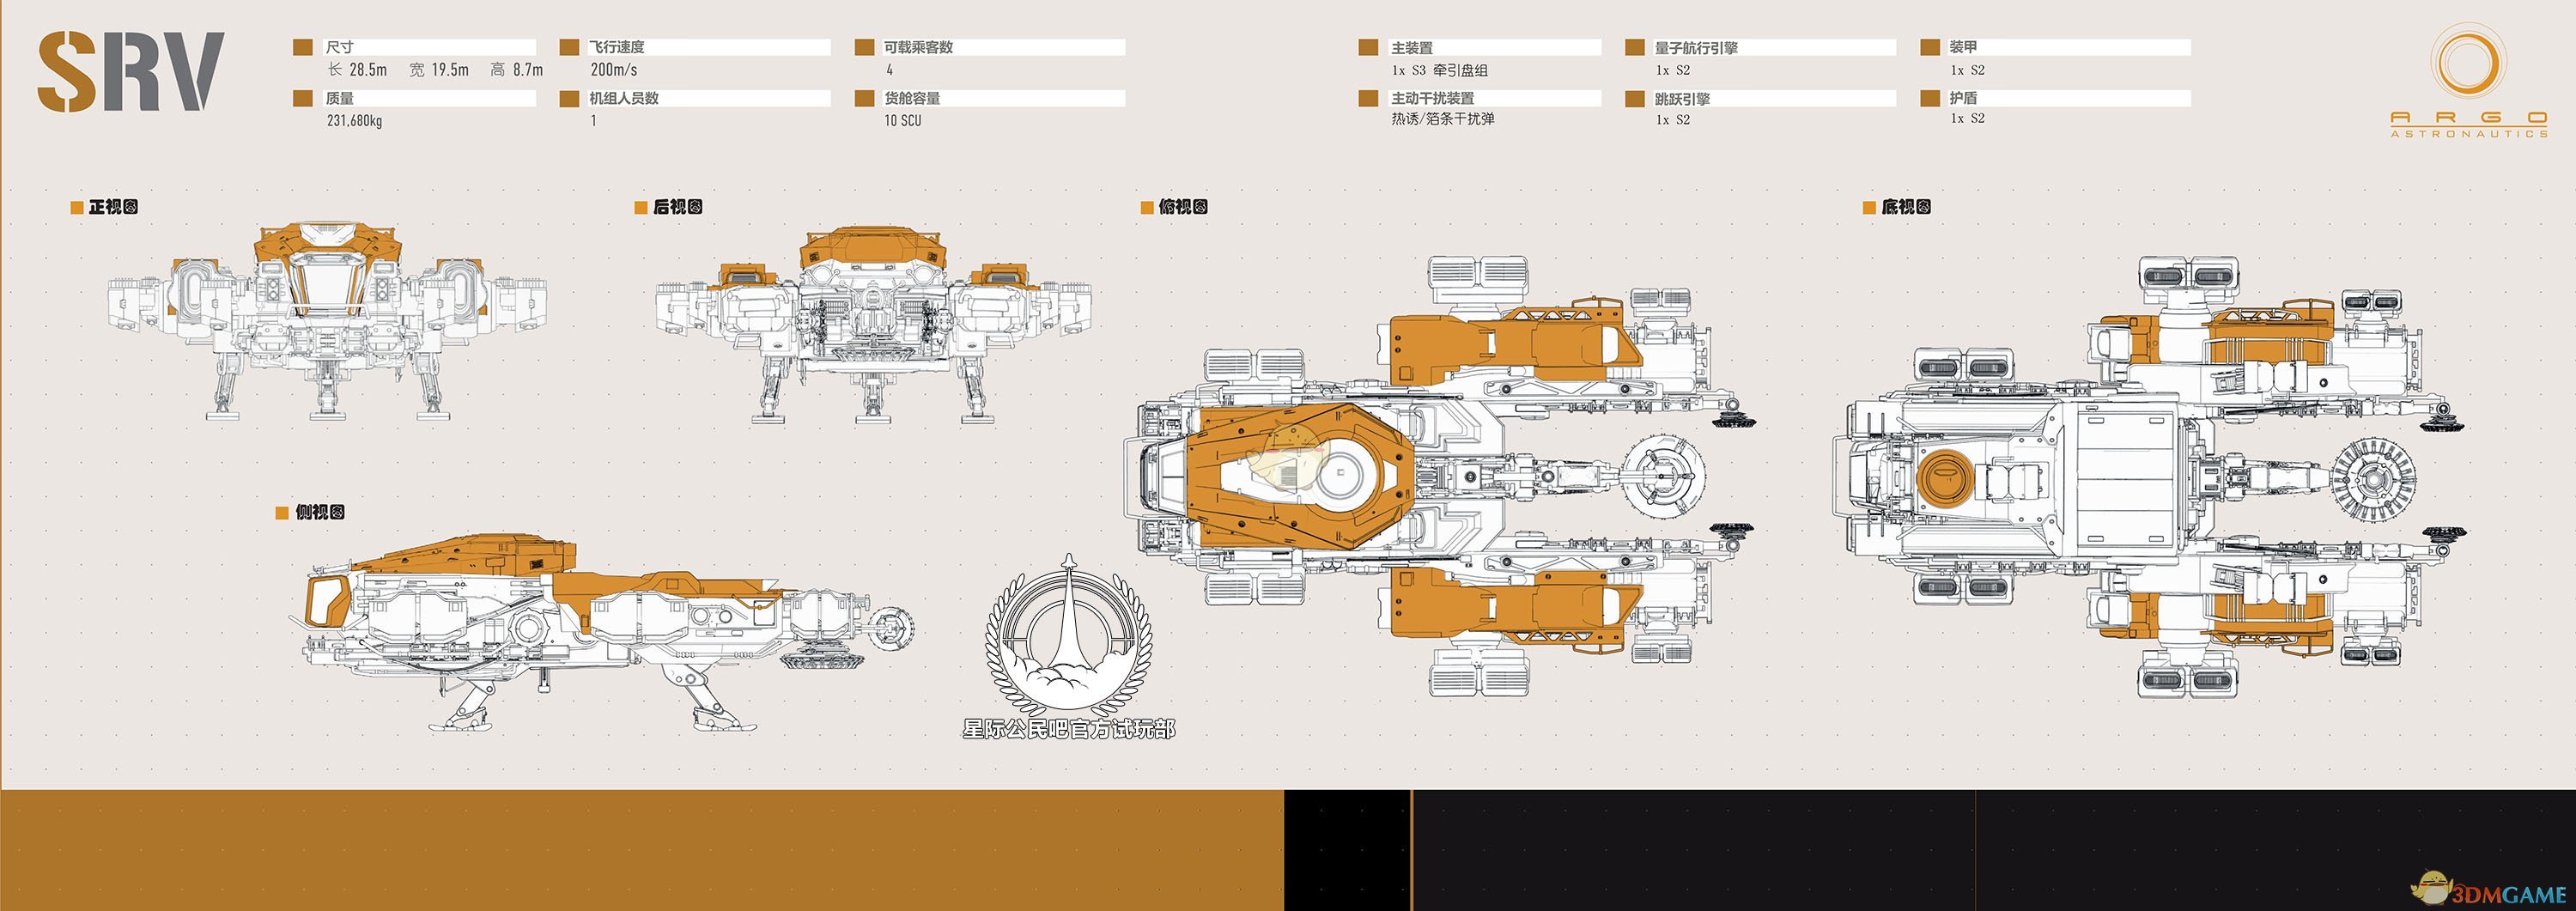 《星际公民》南船航天SRV级牵引舰说明手册一览